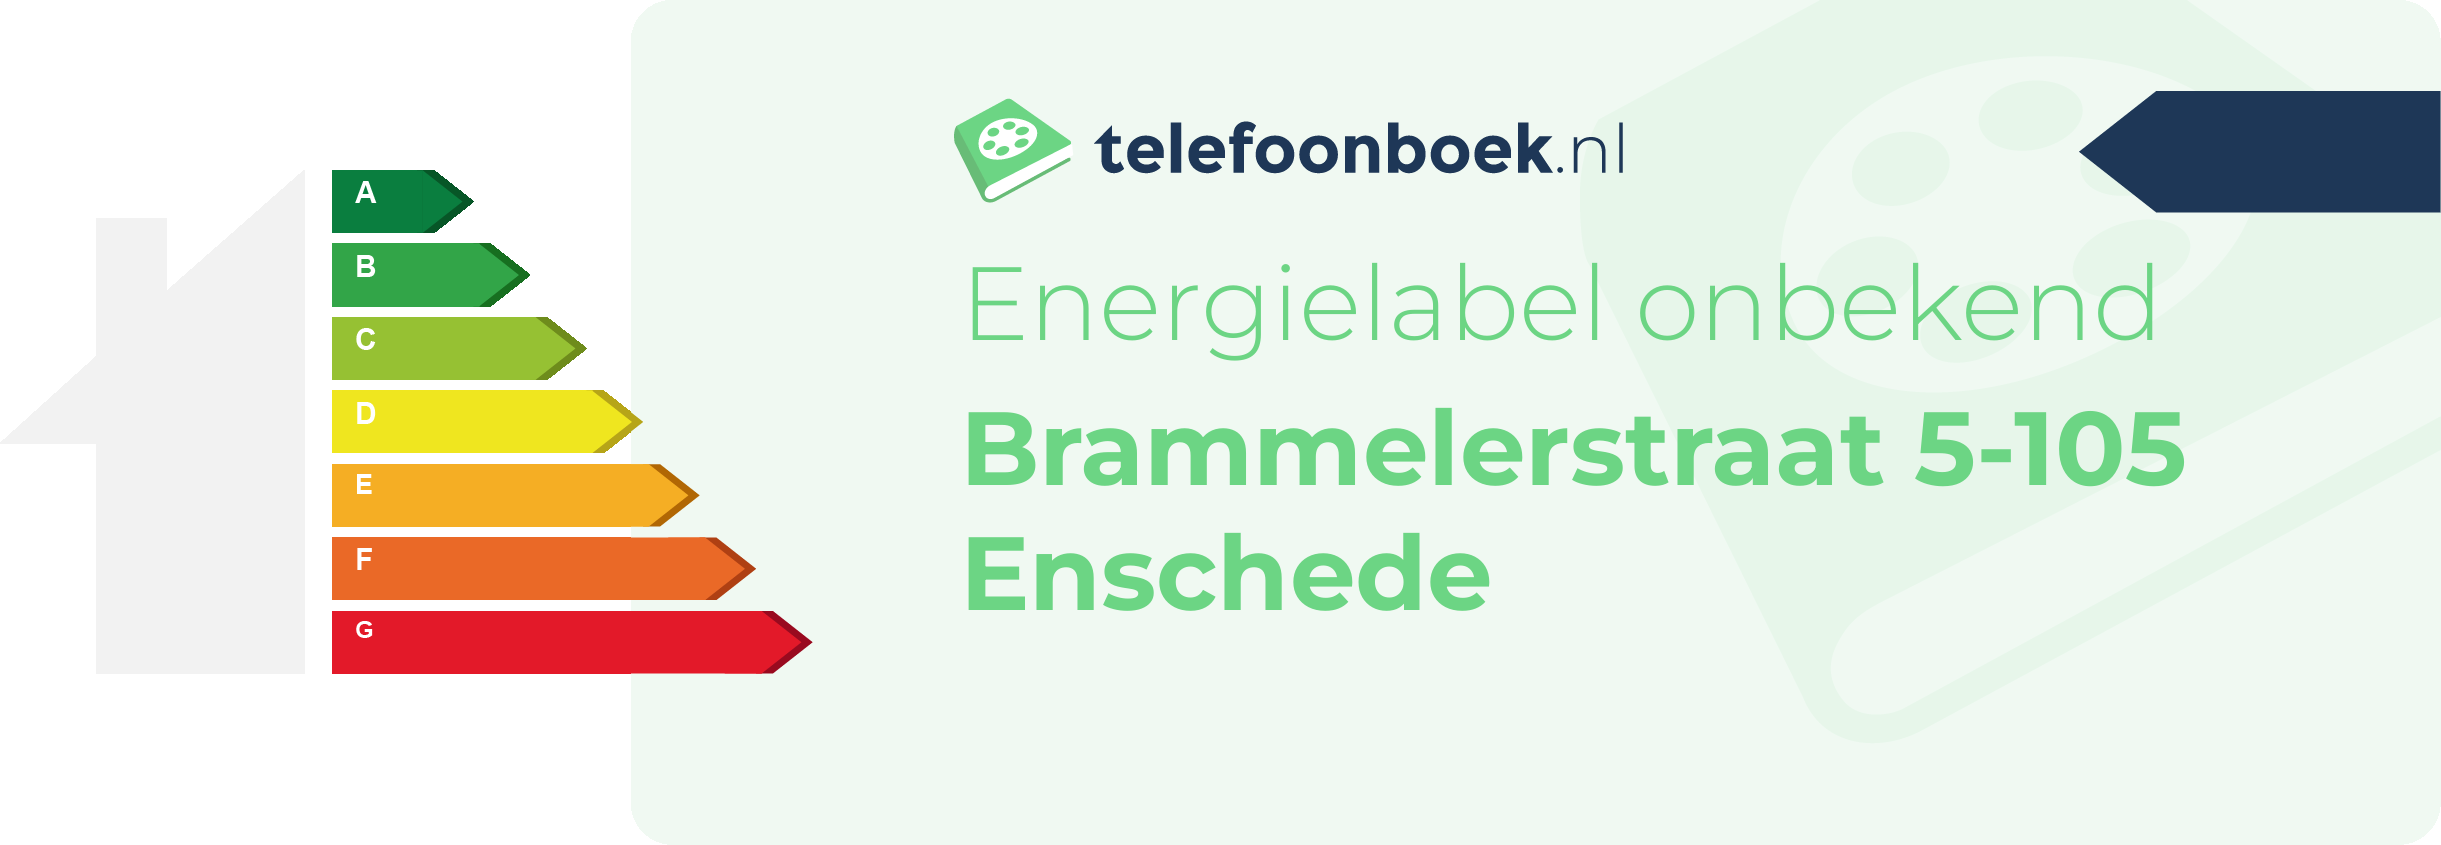 Energielabel Brammelerstraat 5-105 Enschede